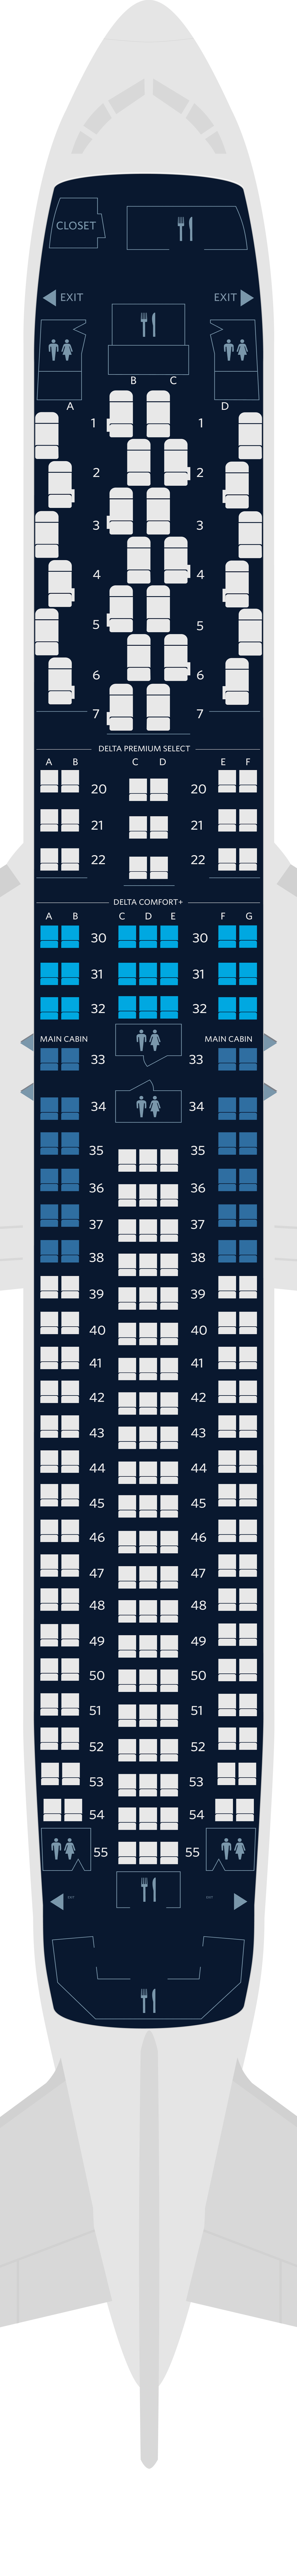 747座位图图片